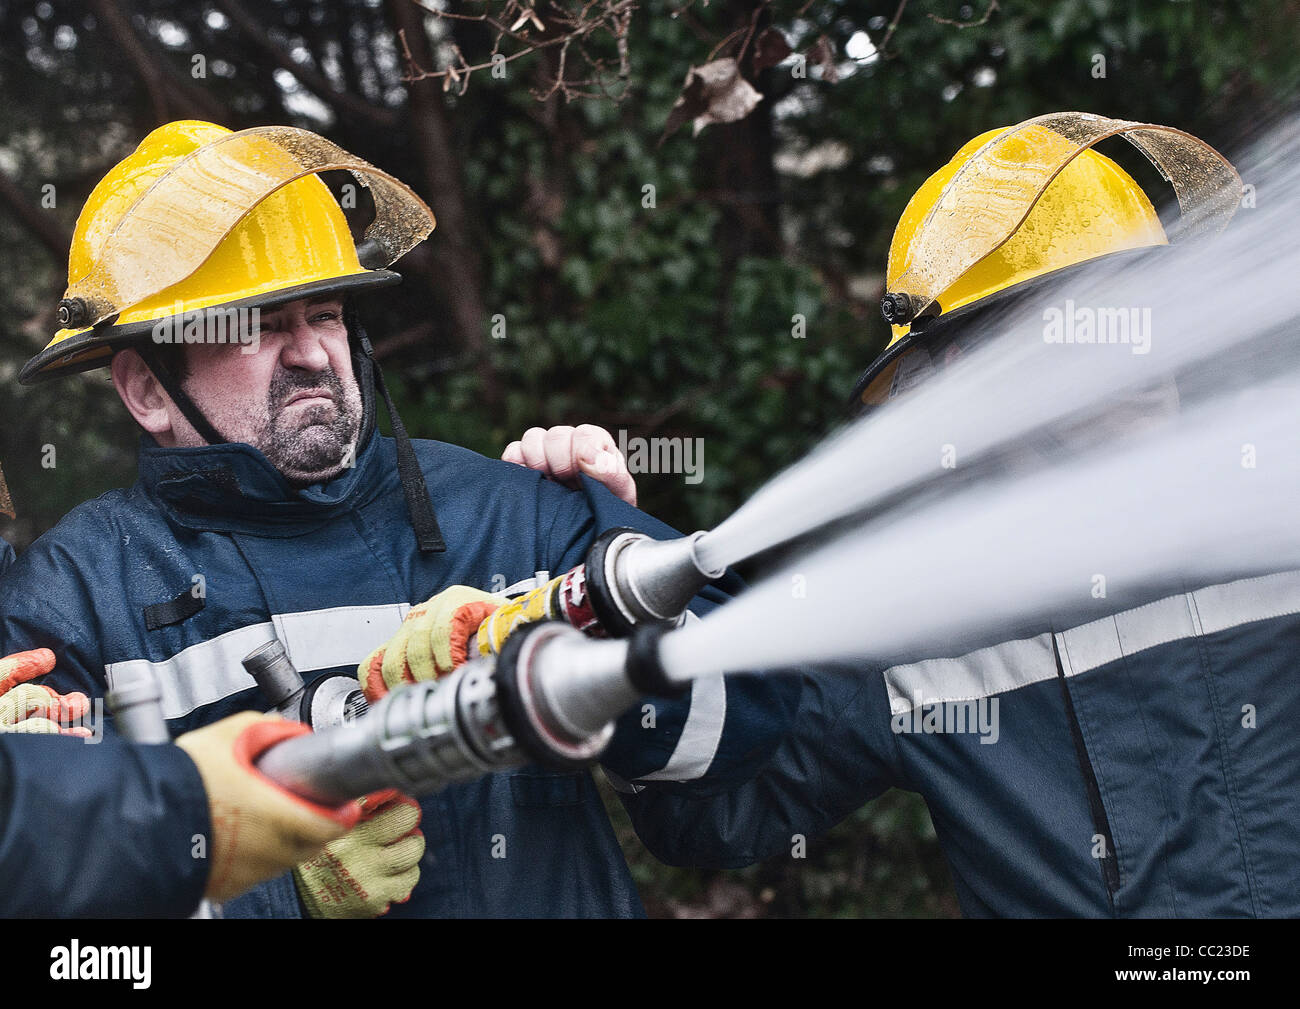 https://c8.alamy.com/comp/CC23DE/fireman-holding-the-hose-CC23DE.jpg